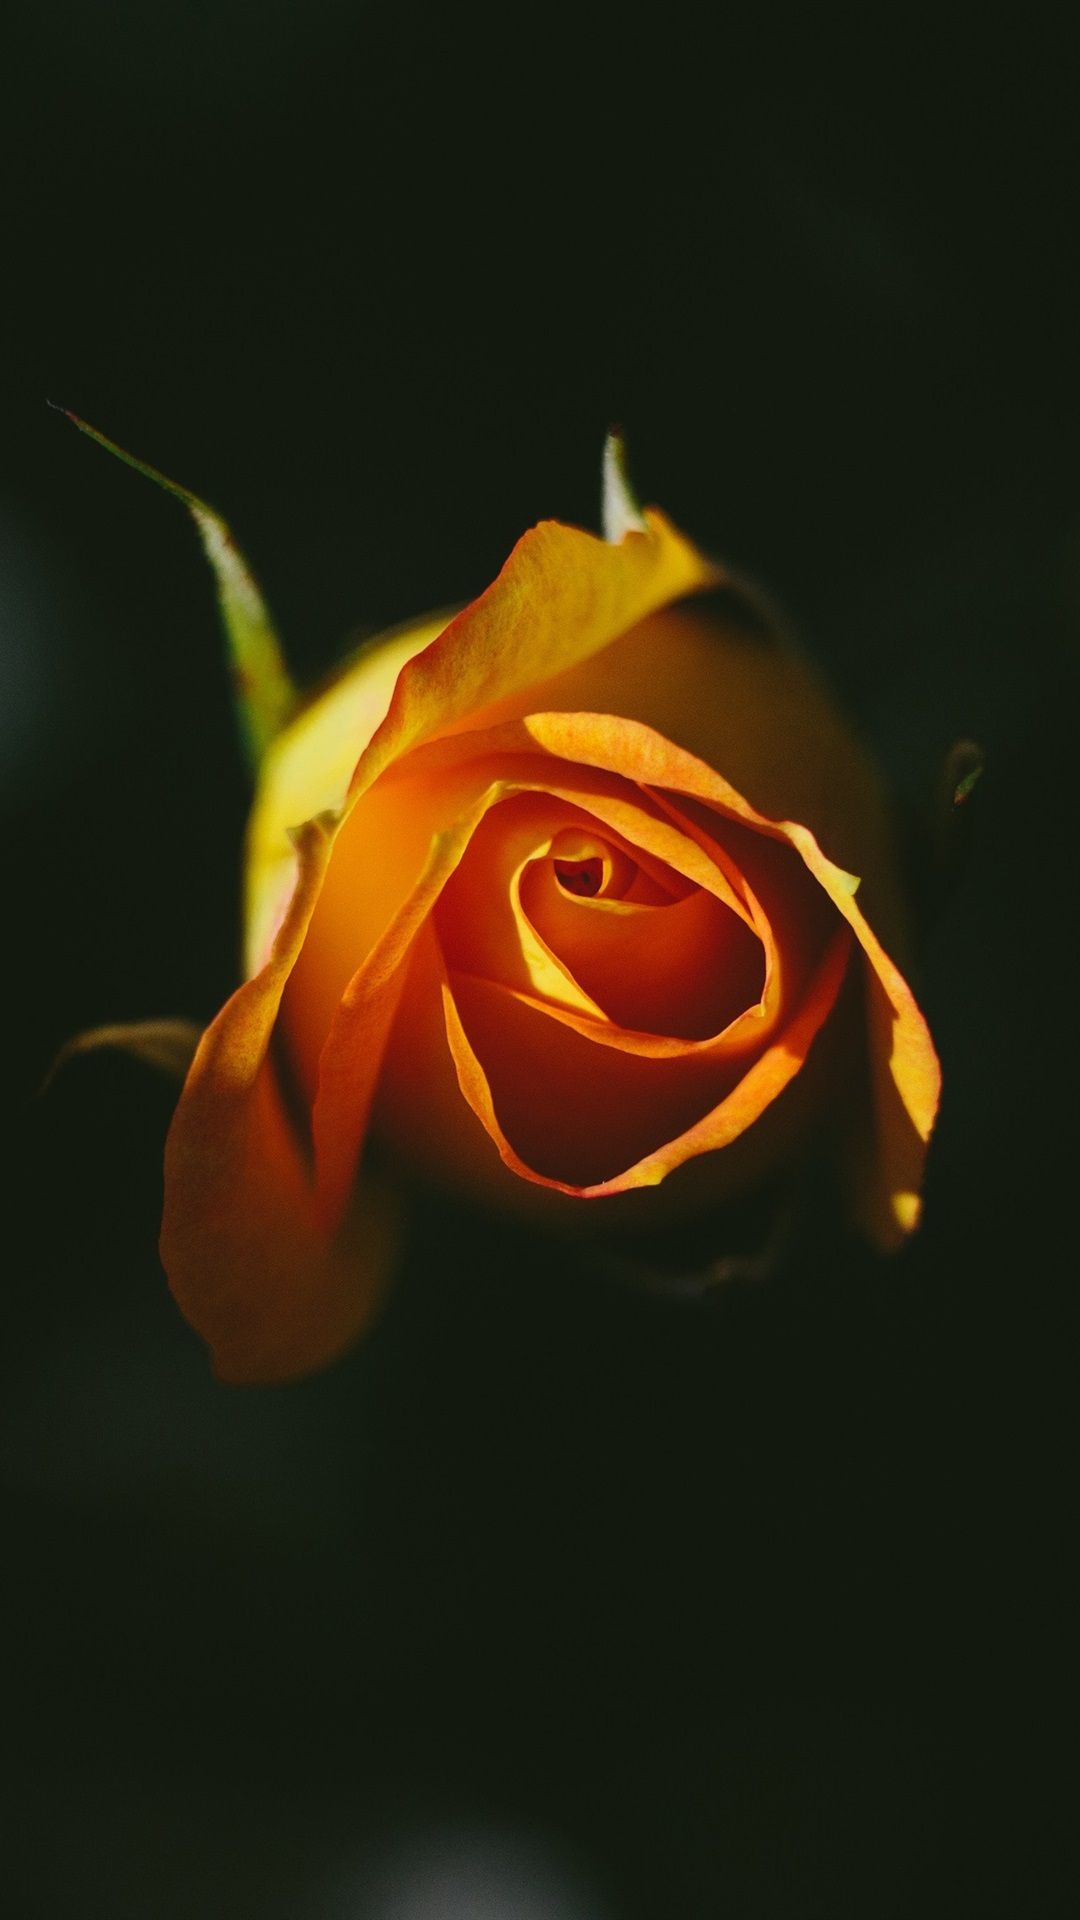 Orange Rose, Black Background 1080x1920 IPhone 8 7 6 6S Plus